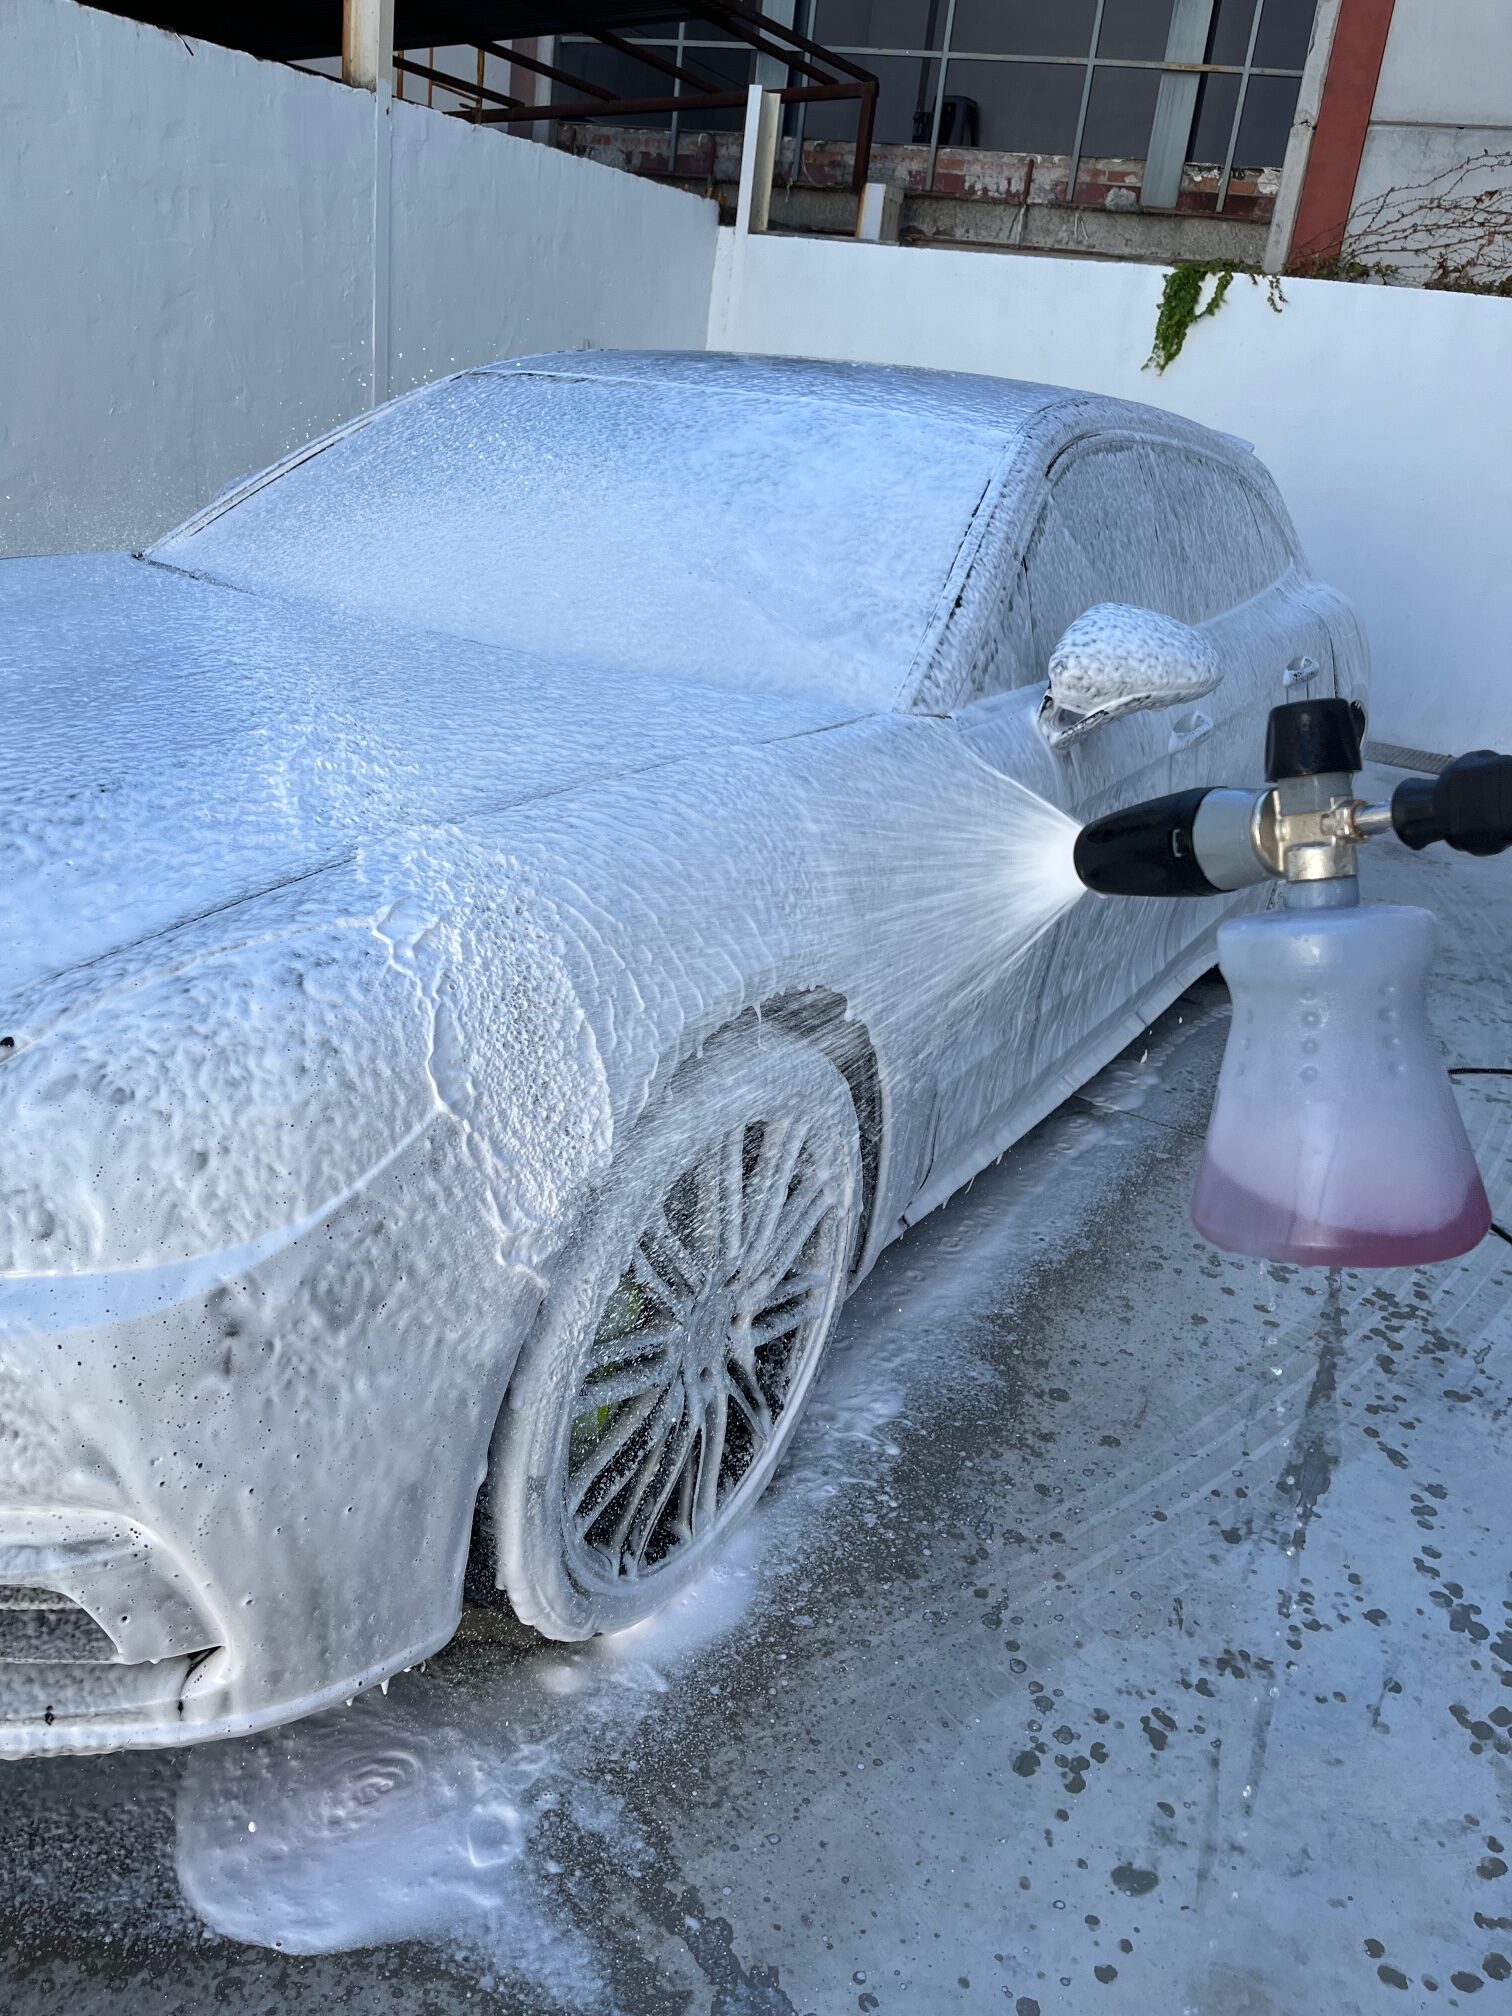 Vega Baja Auto Paint - D18 Snow Foam D18 SNOW FOAM contiene una mezcla de  espumas de múltiples detergentes que acaba con manchas de pavimento y  carbón,dejando la pintura y los cristales